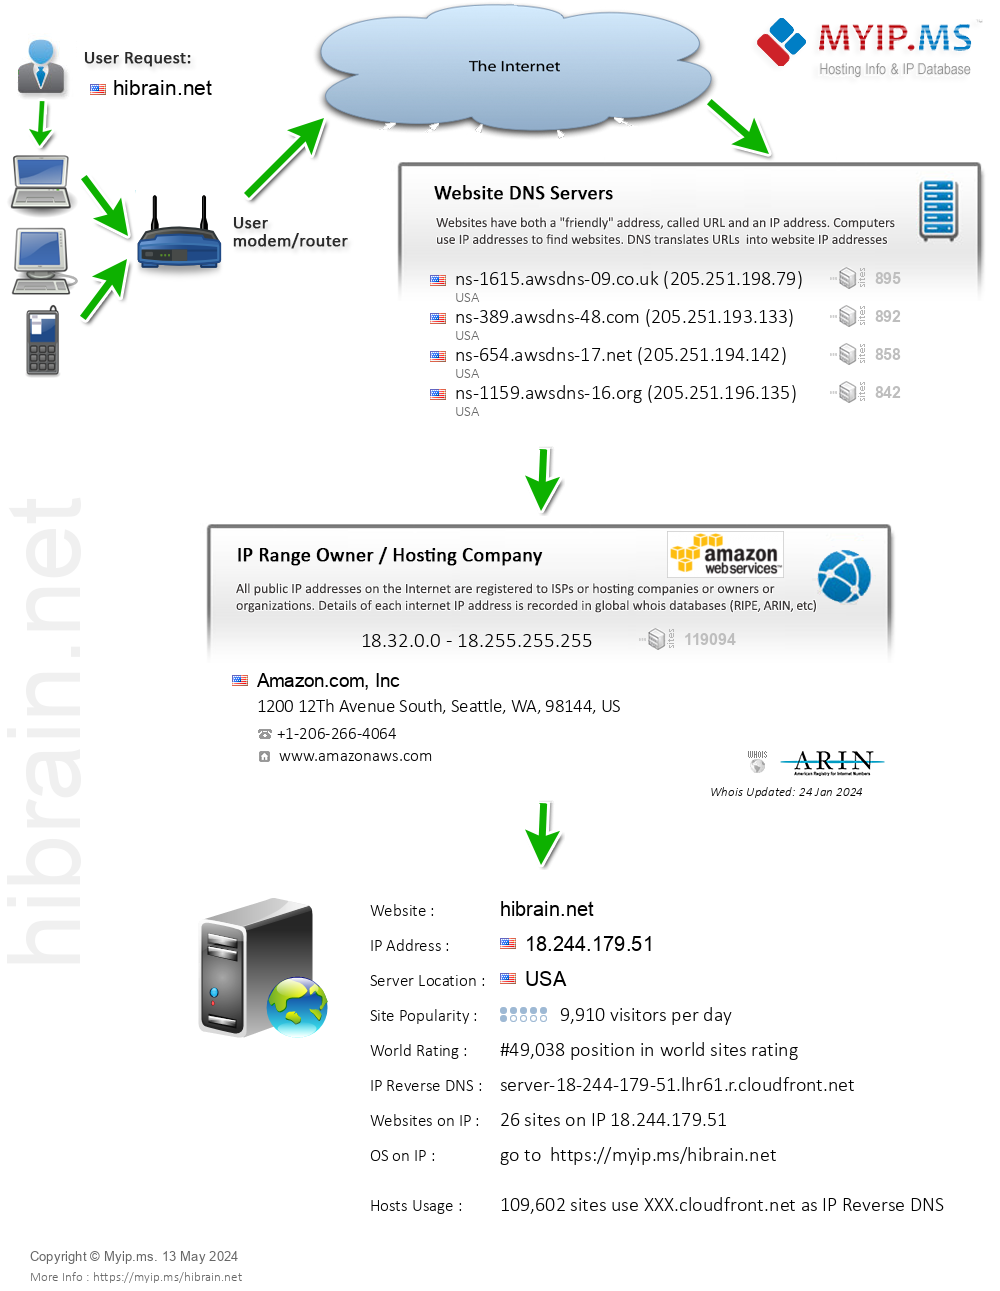 Hibrain.net - Website Hosting Visual IP Diagram